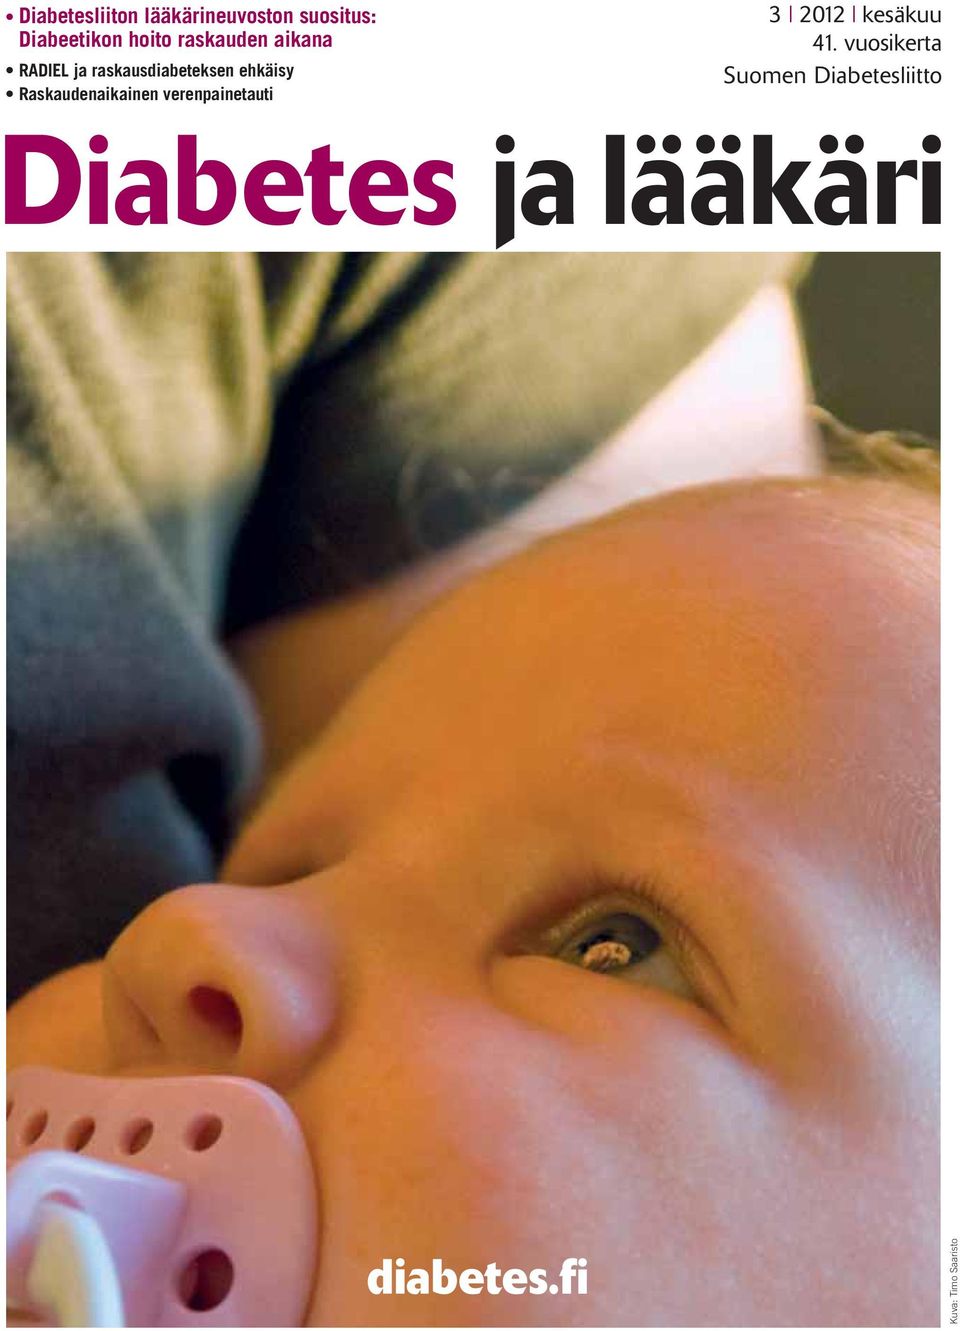 Diabetesliitto Diabetes